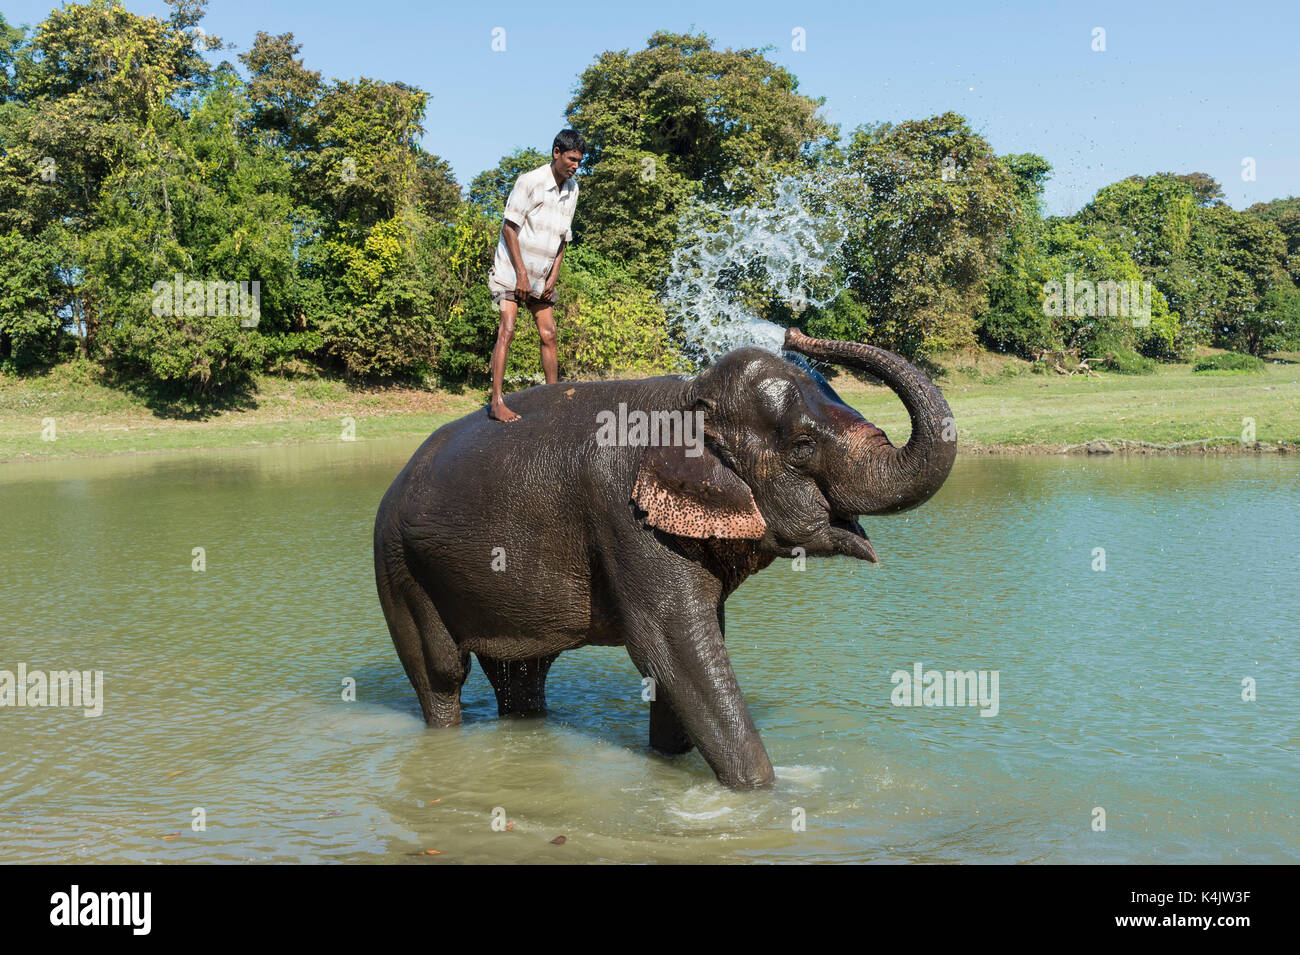 Mahout debout sur le dos de son éléphant indien (Elephas maximus indicus) en prenant un bain dans la rivière, kaziranga, Assam, Inde, Asie Banque D'Images